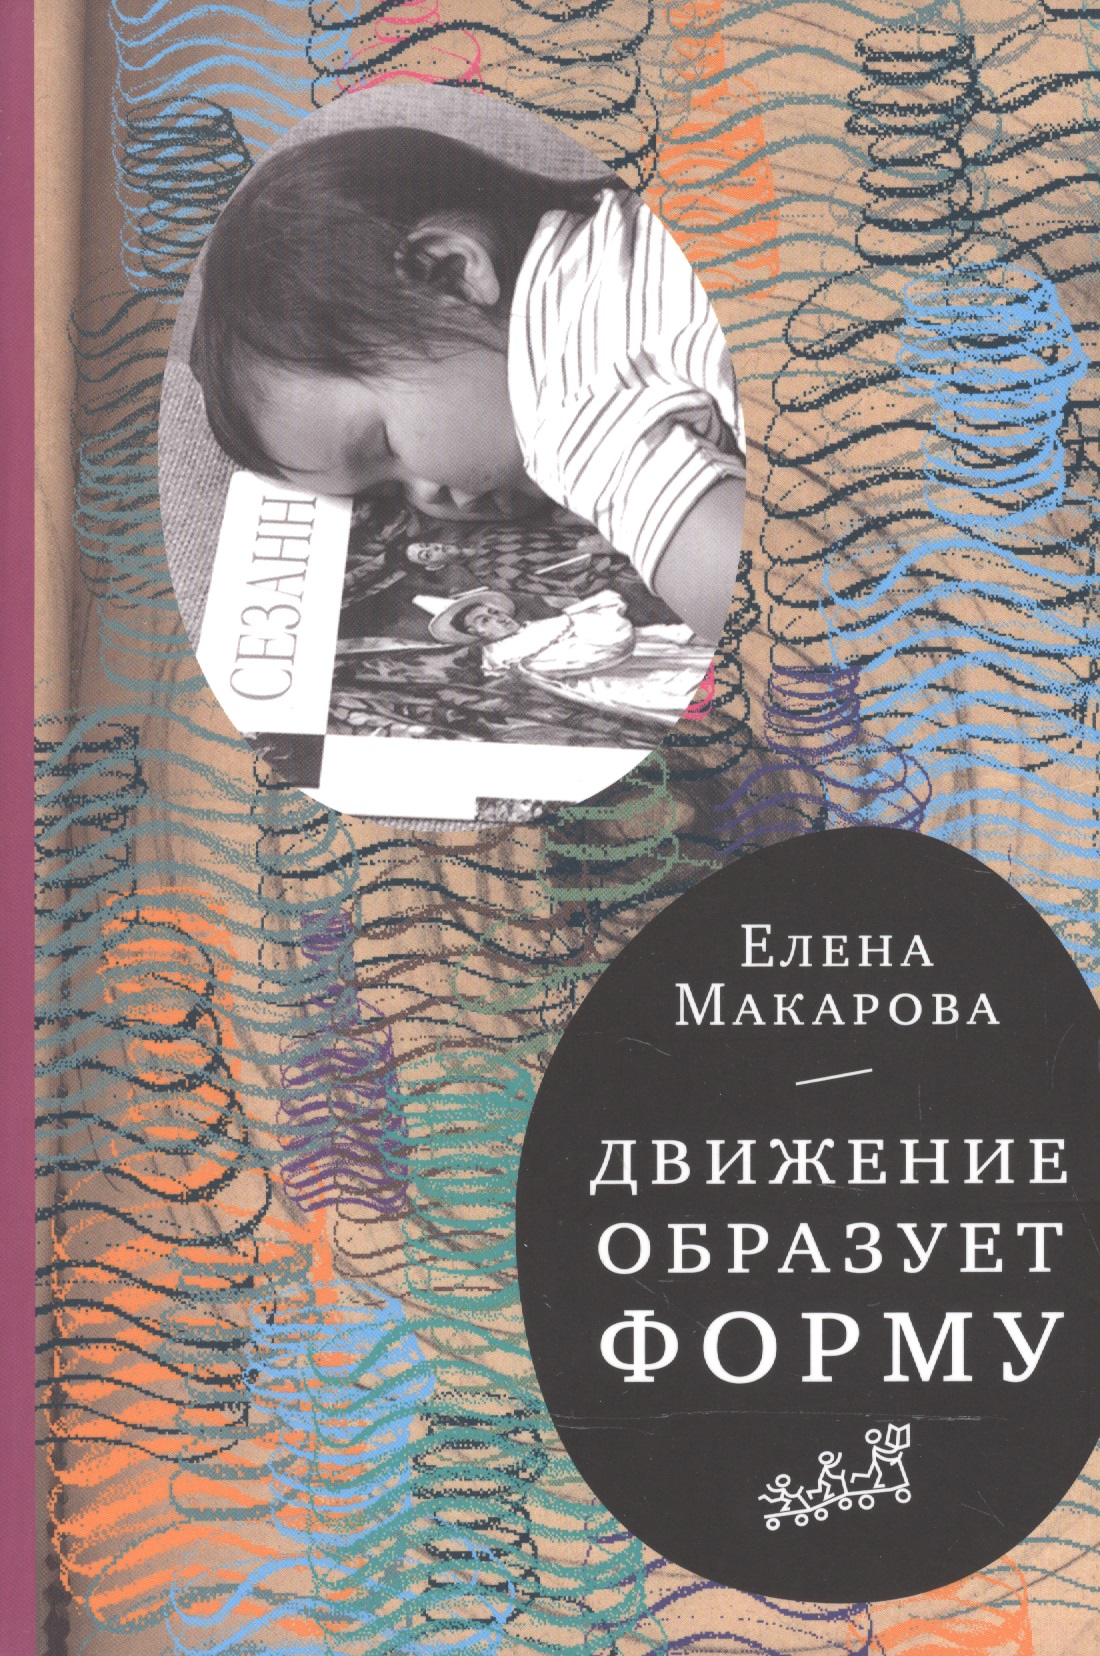 Макарова Елена Григорьевна Движение образует форму (2-е издание)